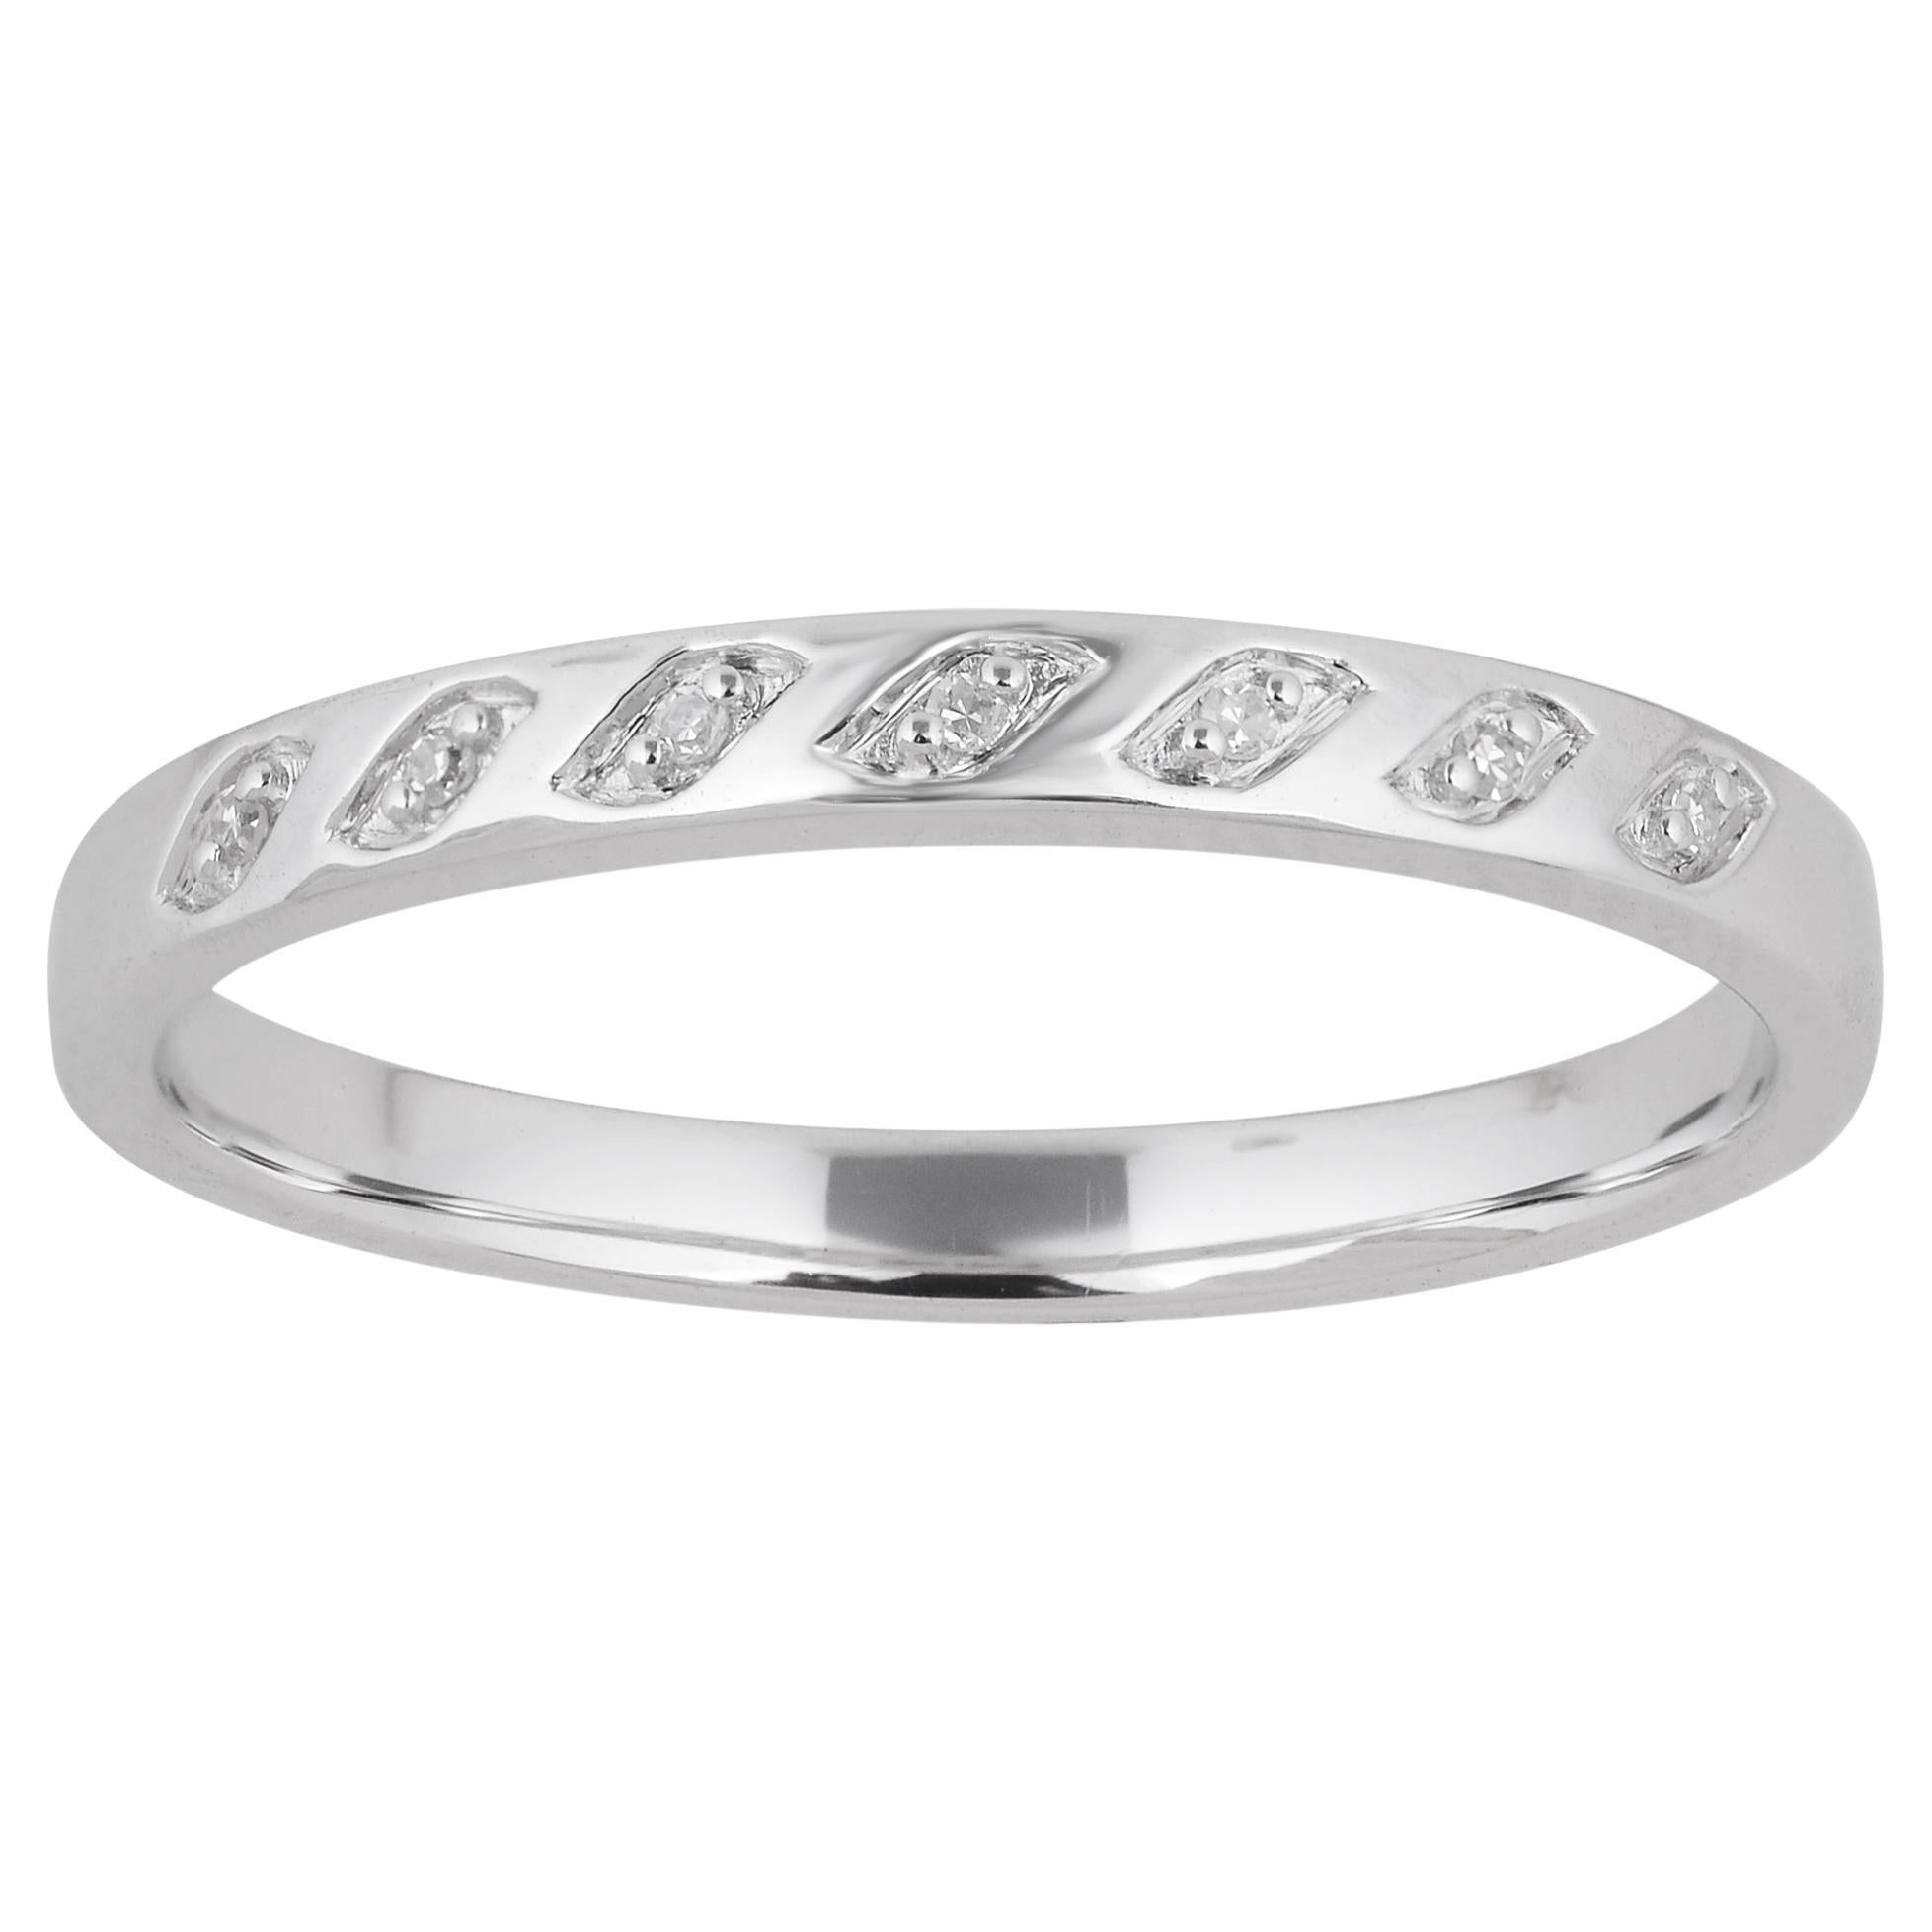 TJD 0.02 Carat Natural Round Diamond 14 Karat White Gold Wedding Band Ring